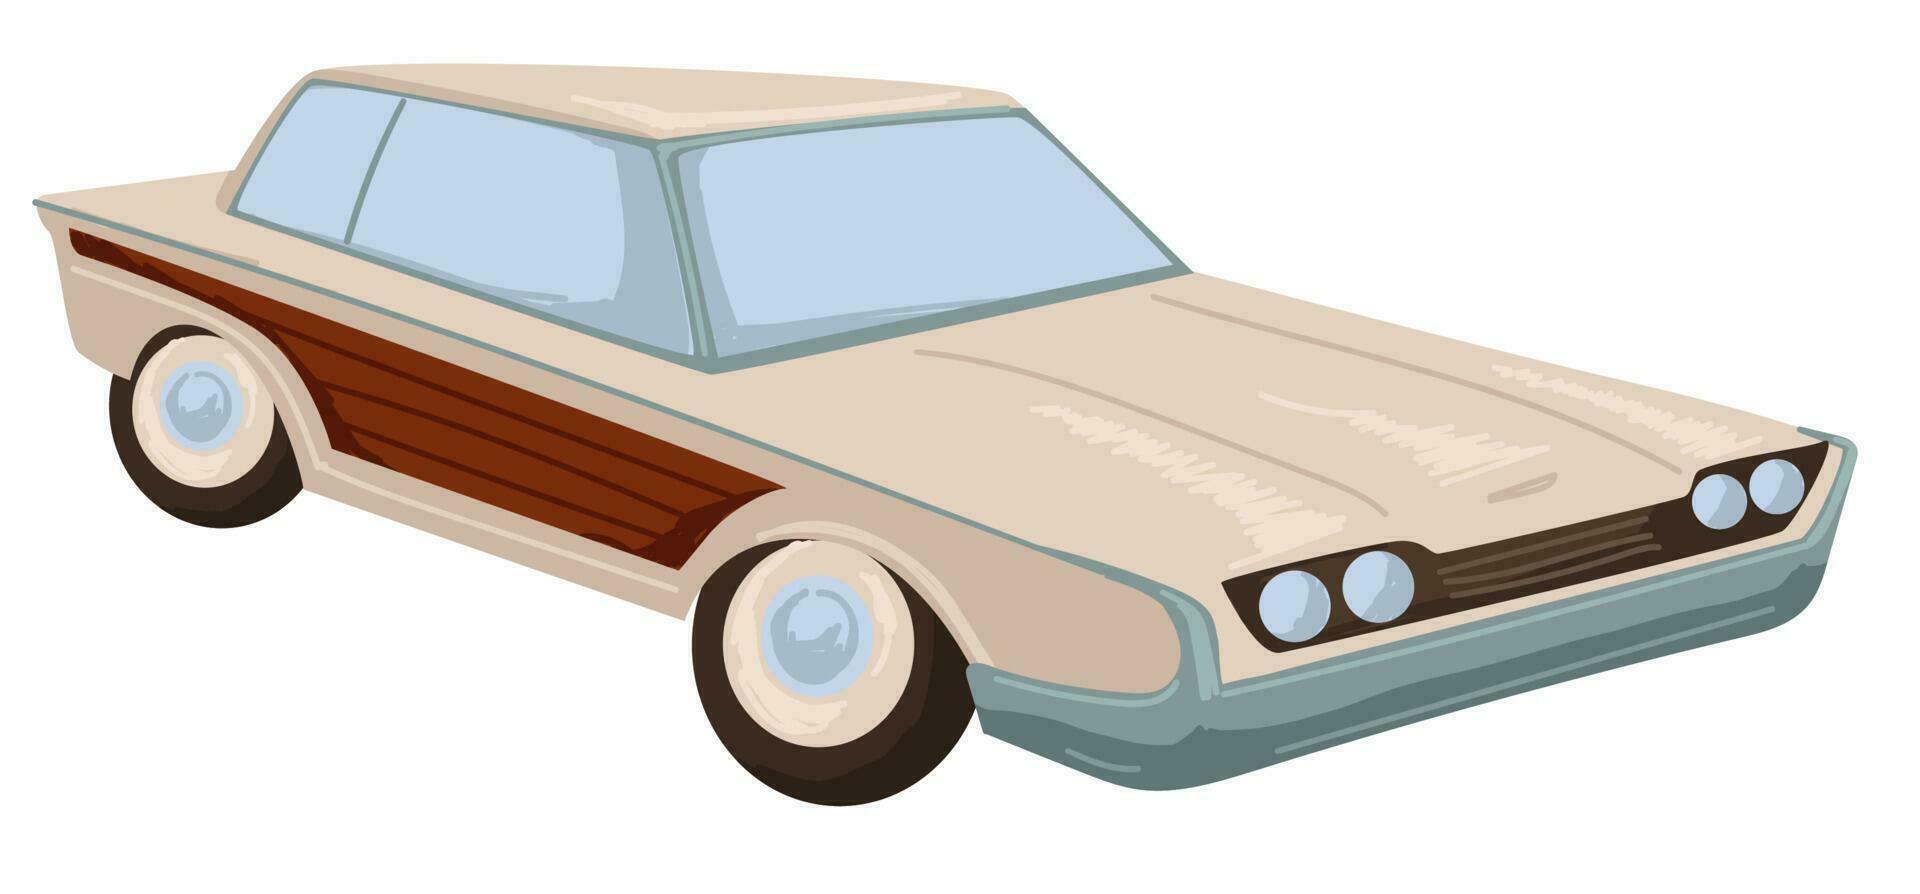 Retro car, vintage automobile of 1960s transport vector